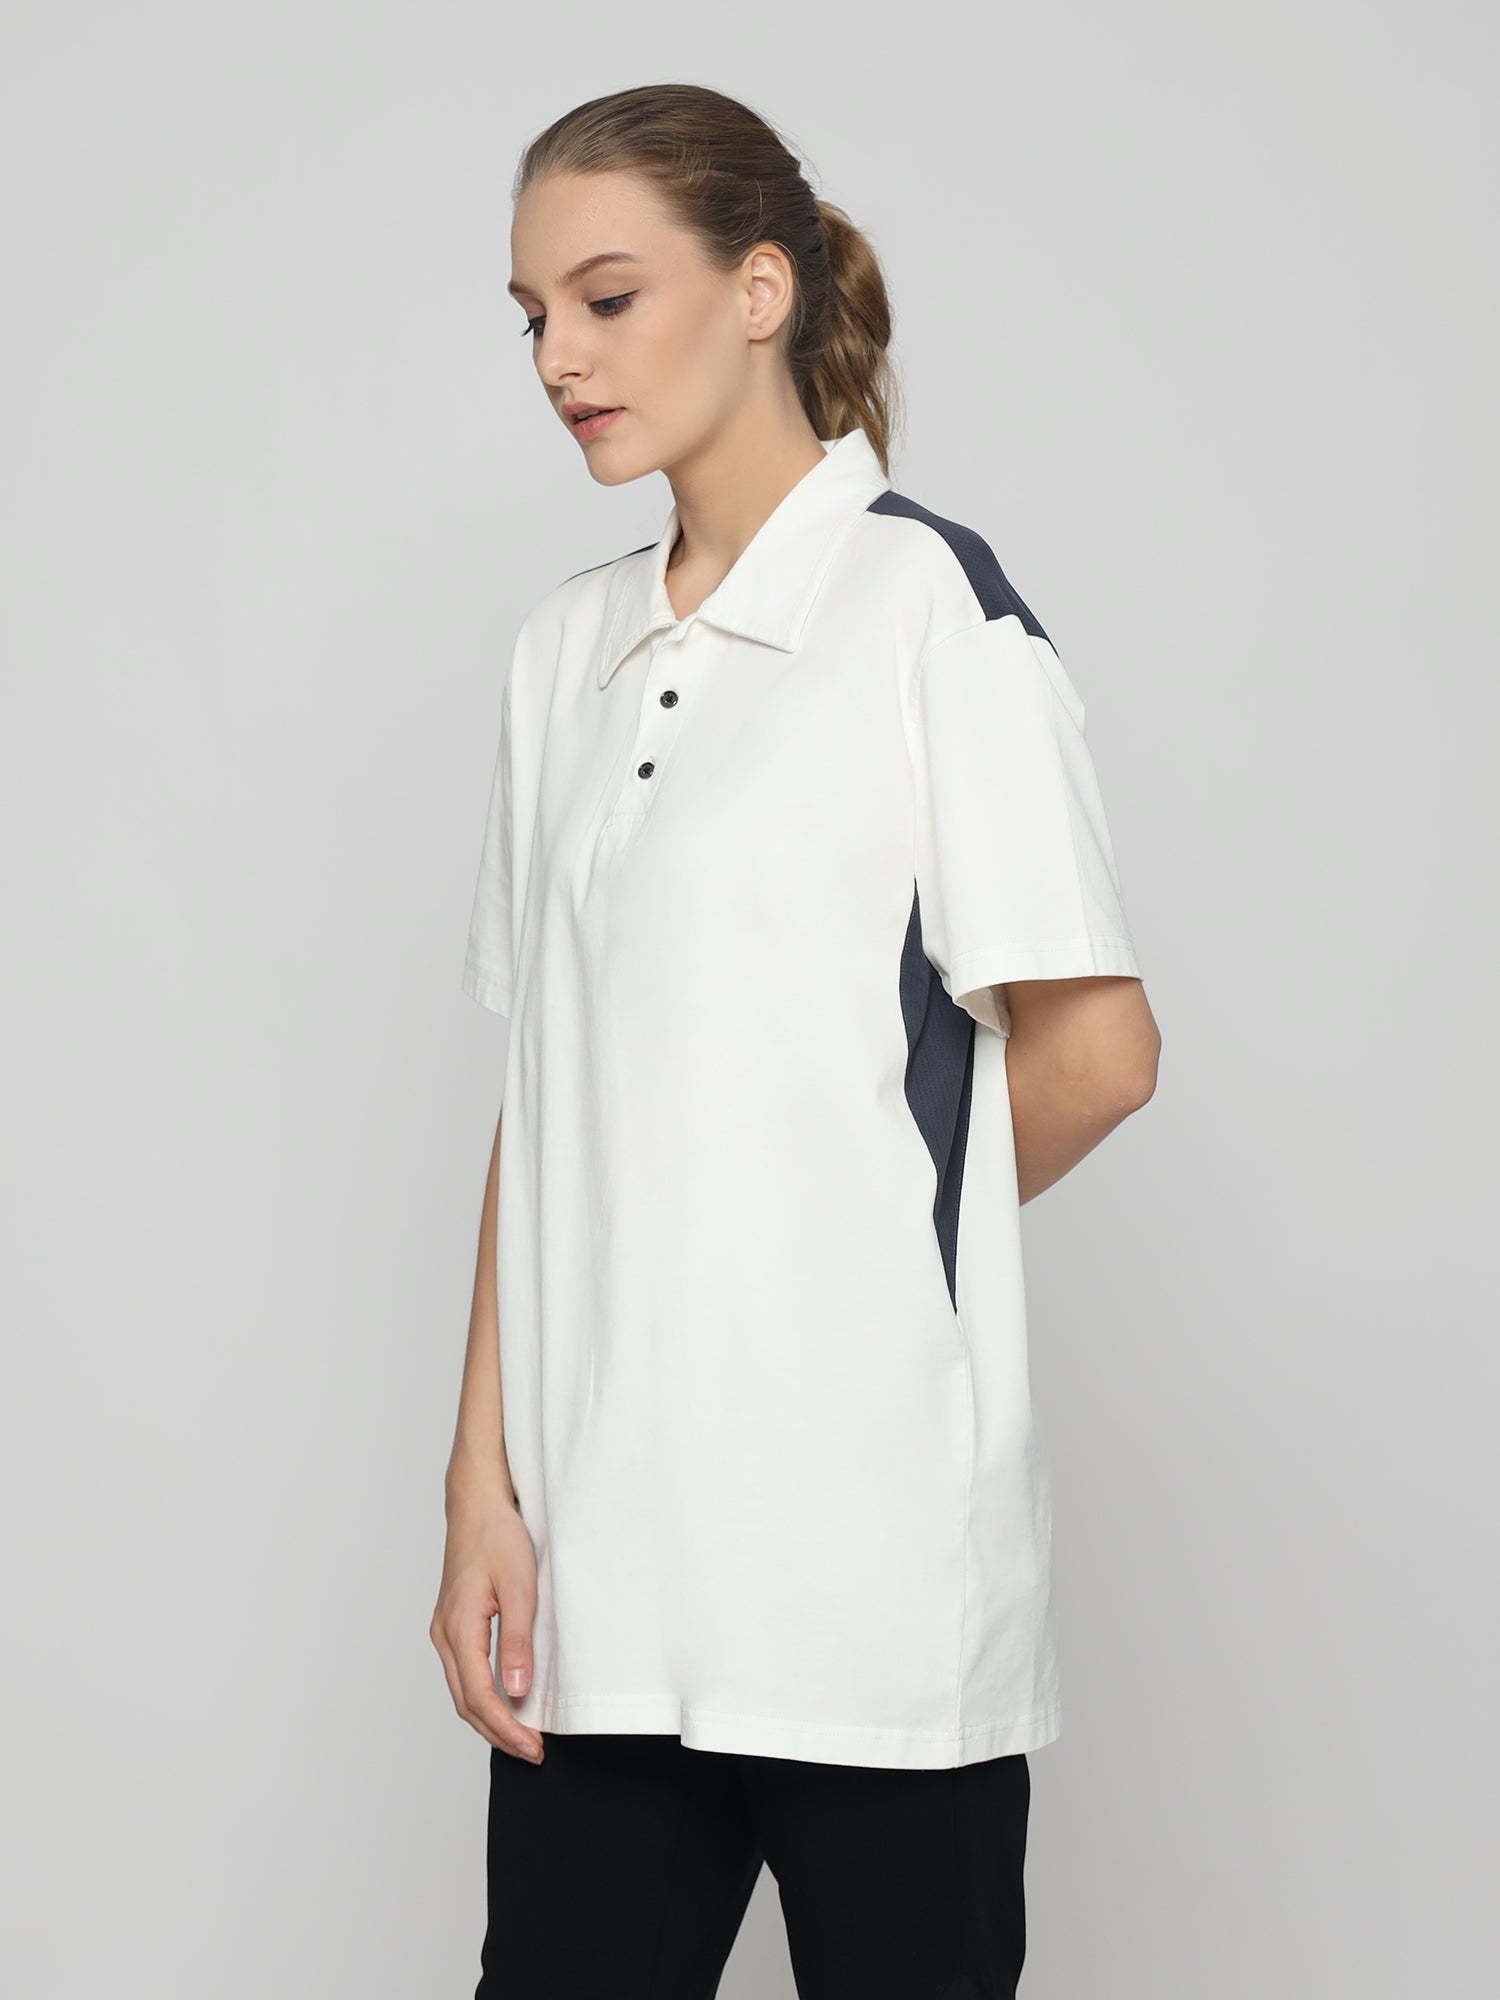 Unisex Everyday Polo Female T-shirt White